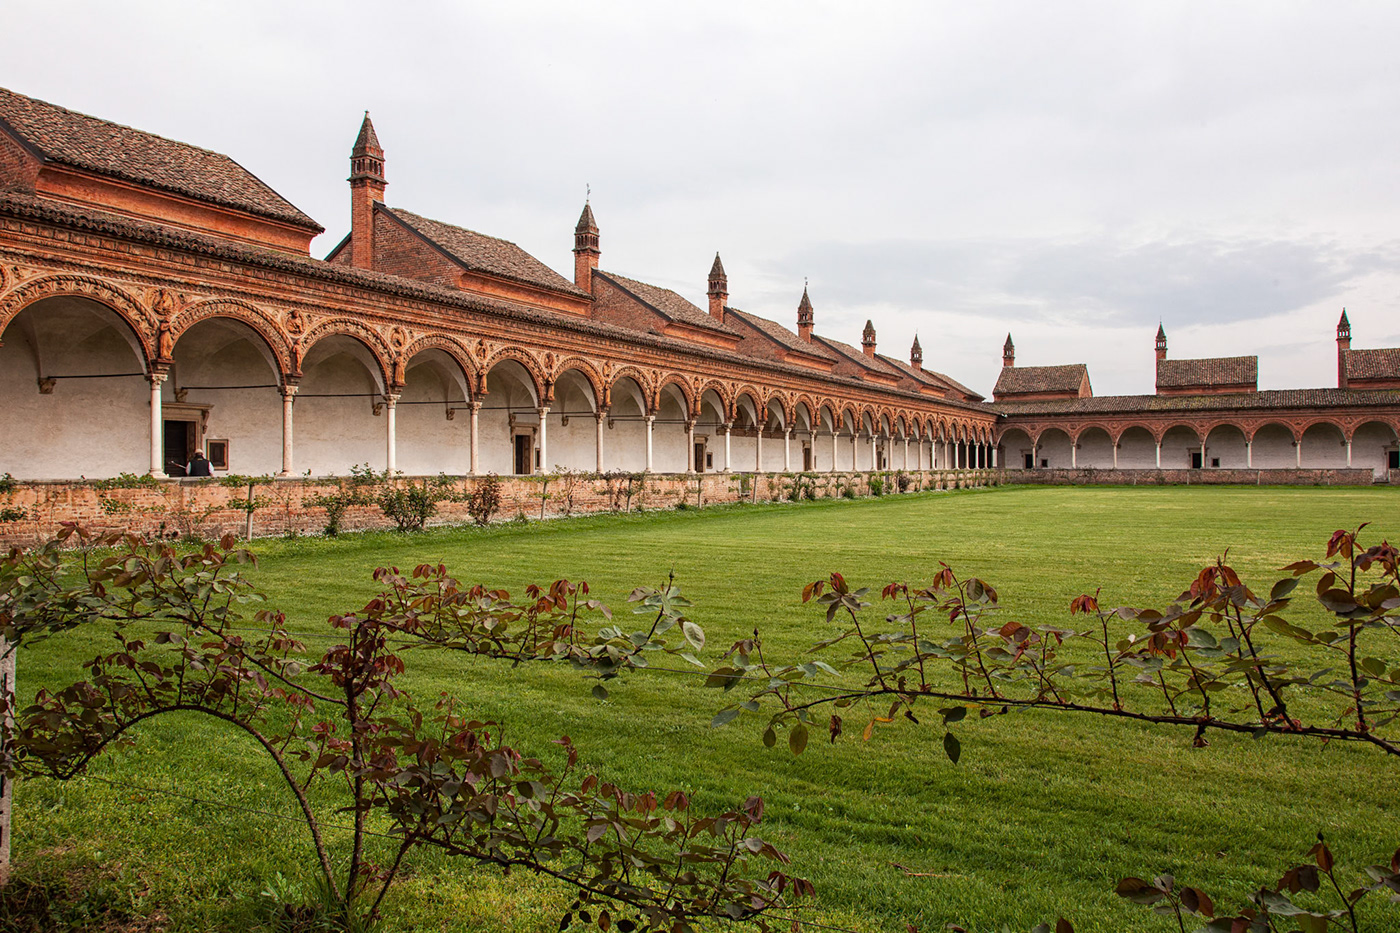 Pavia Renaissance monk art courtyard Certosa di Pavia frescoes Religious sites